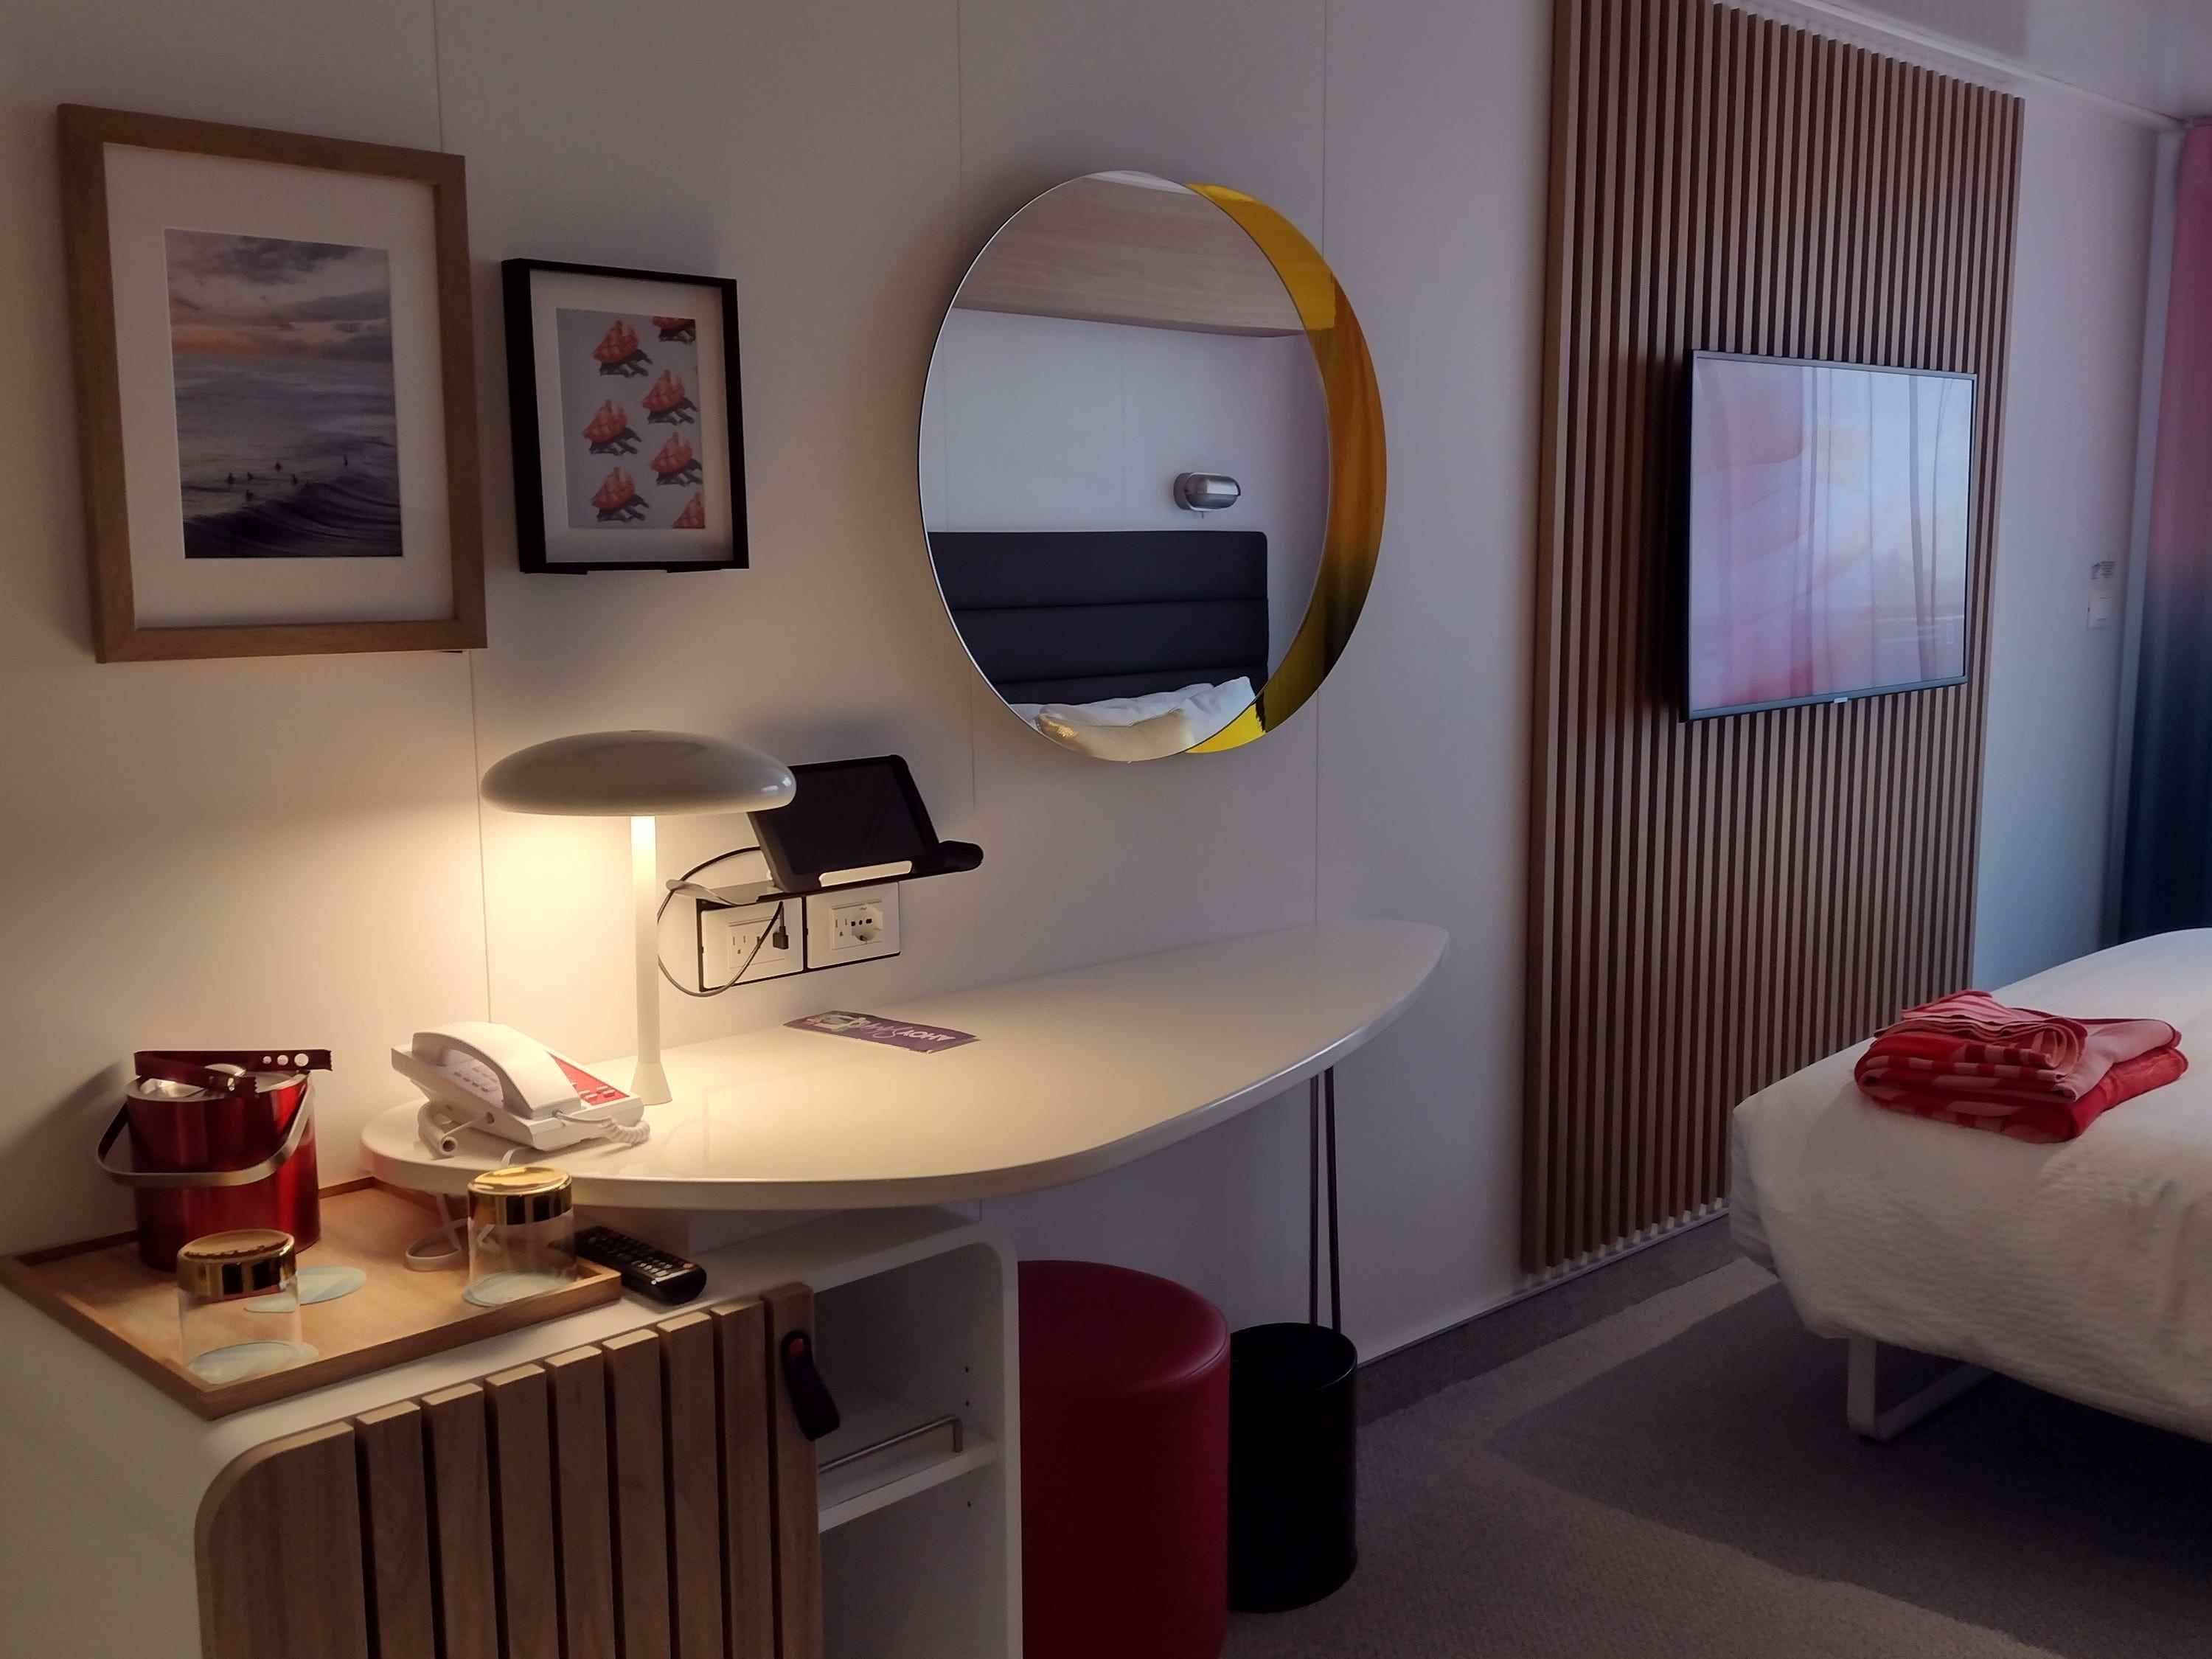 Der Schreibtisch in einer Kreuzfahrtkabine mit Spiegel, Kunstwerken, einem Bett und einem Fernseher.